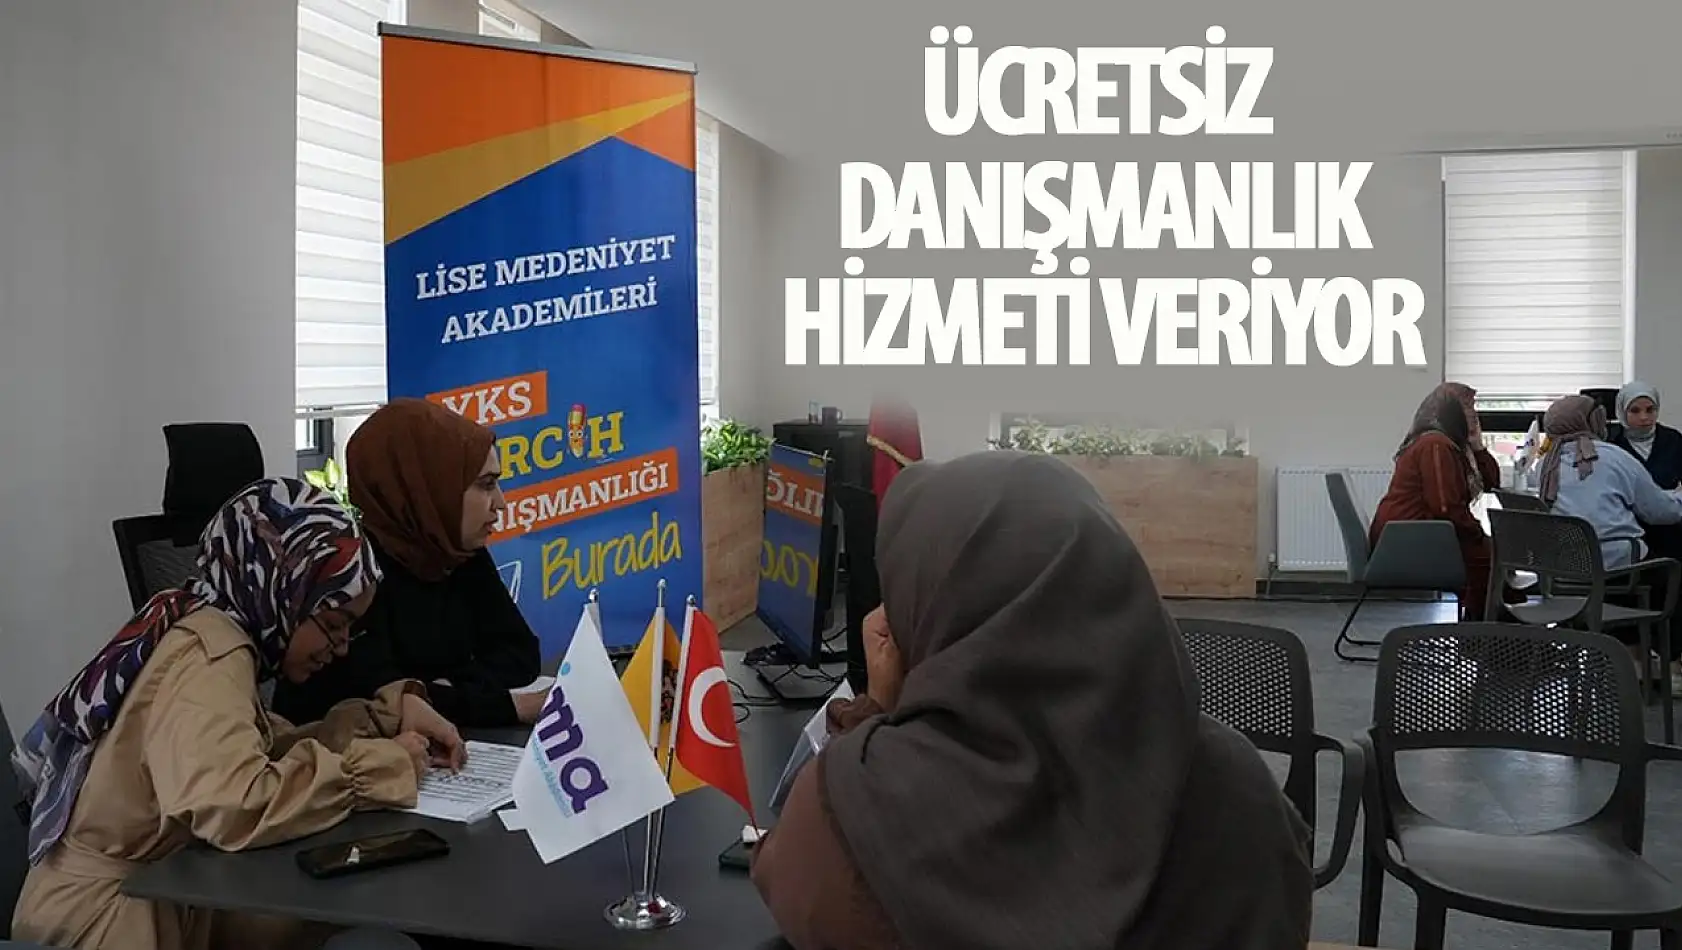 Konya Büyükşehir Belediyesi'nden Ücretsiz YKS Tercih Danışmanlığı Hizmeti